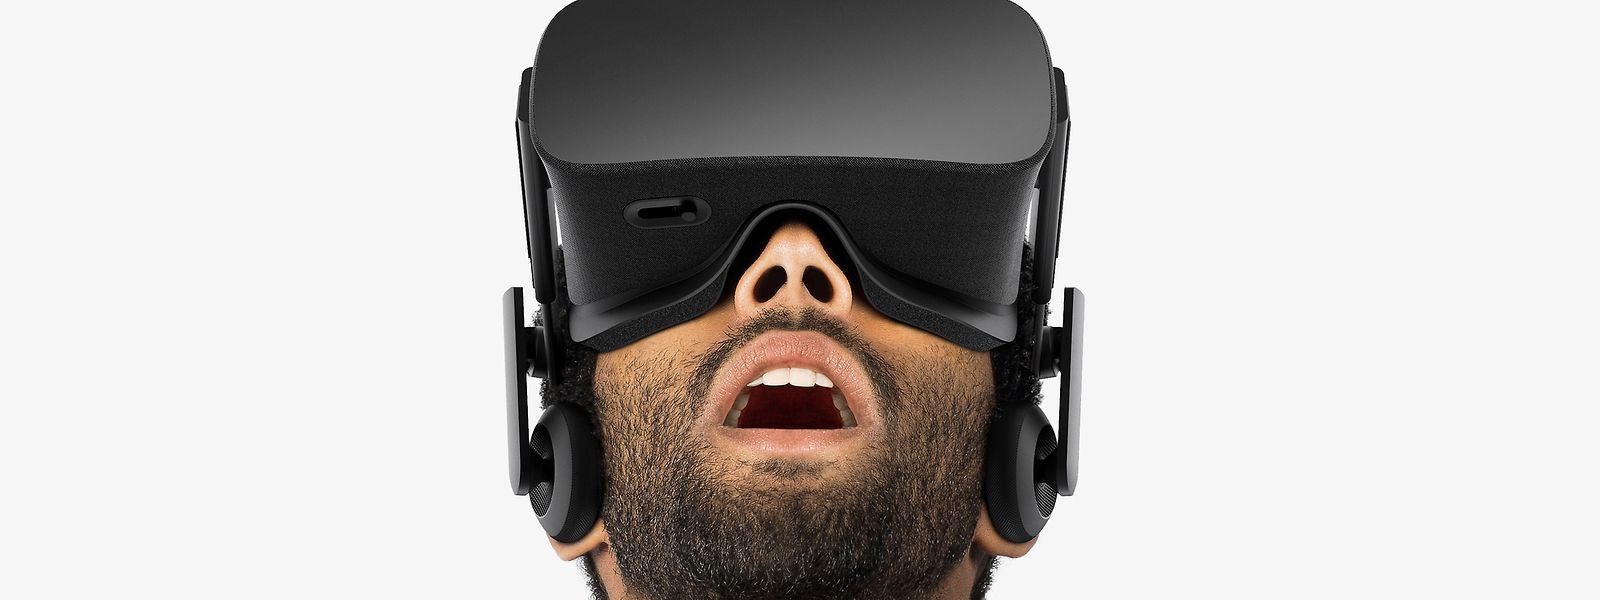 Wenn sich die virtuelle Spielewelt wie Realität anfühlt. Mit VR-Brillen wie der "Oculus Rift" wird dieses Erlebnis möglich.